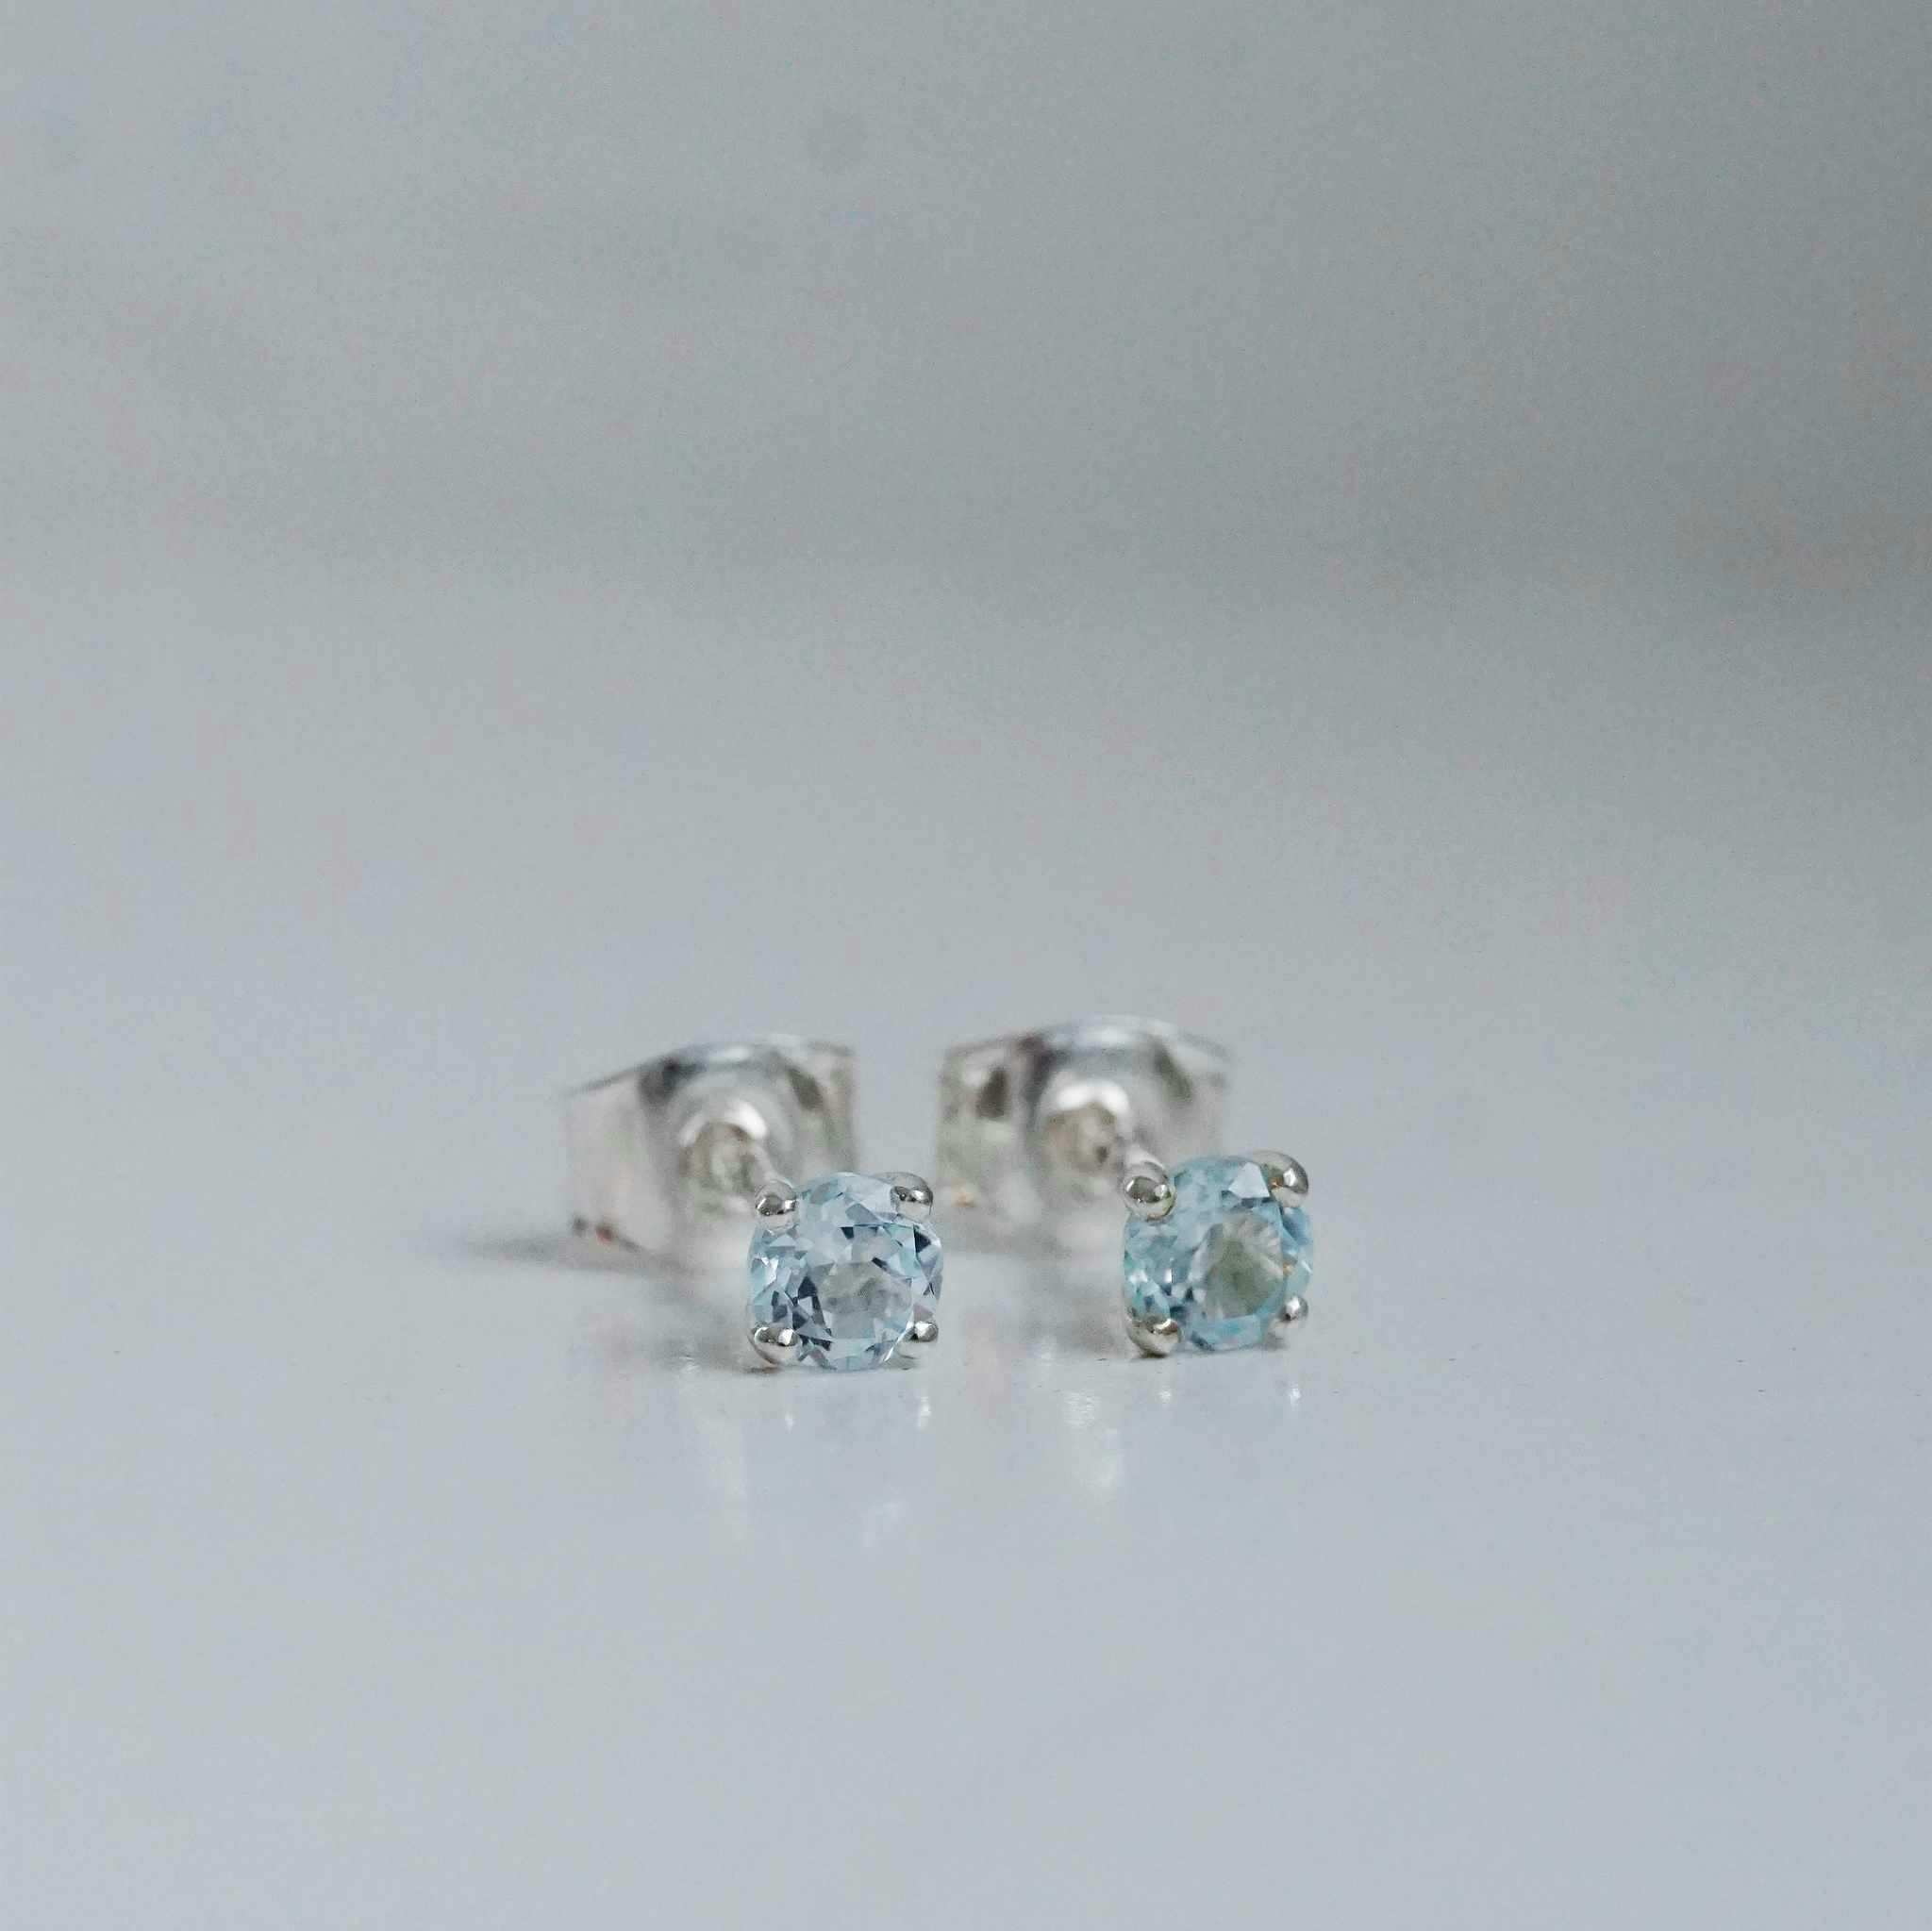 Stellar" örhängen i silver med blå topas - Malin Ivarsson Jewelry